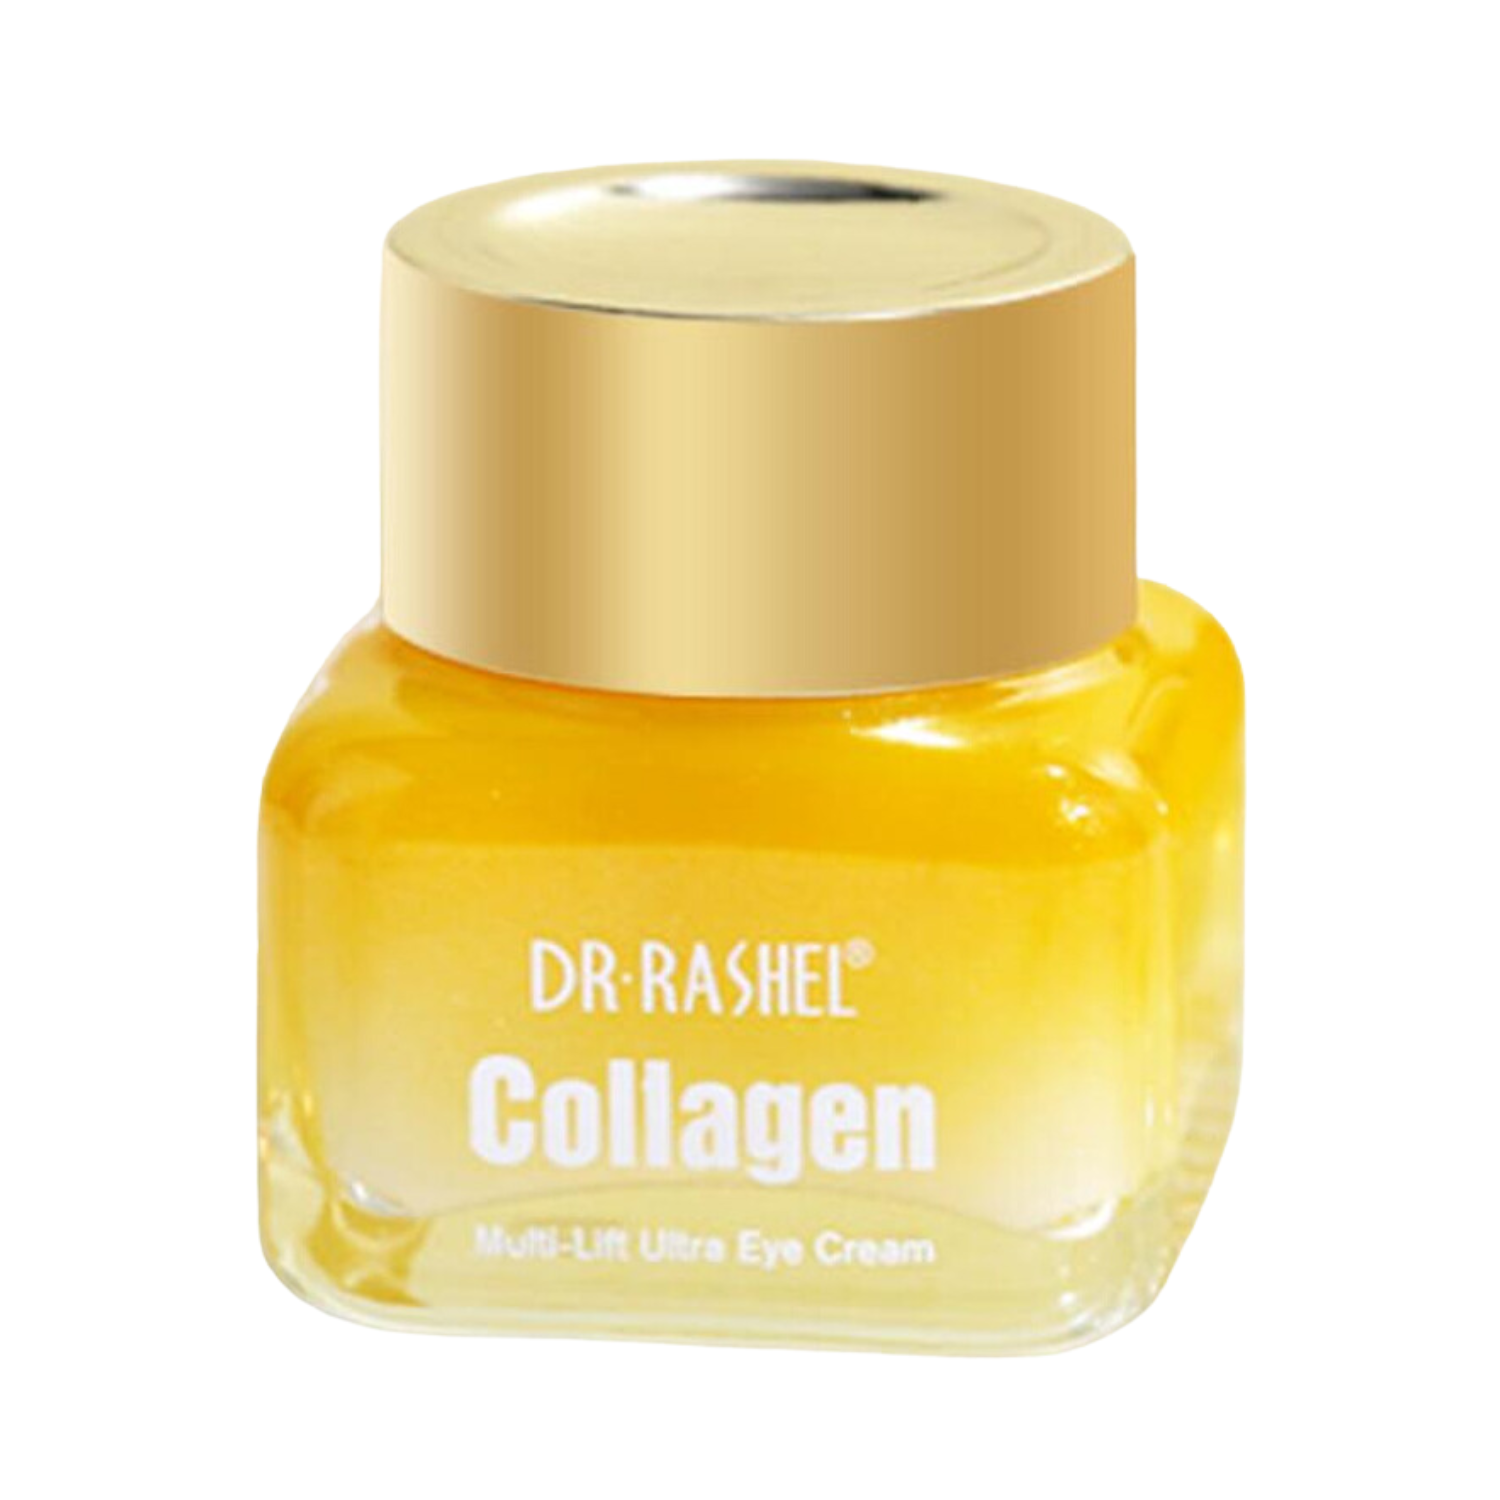 dr-rashel-collagen-multi-lift-ultra-eye-cream-15g